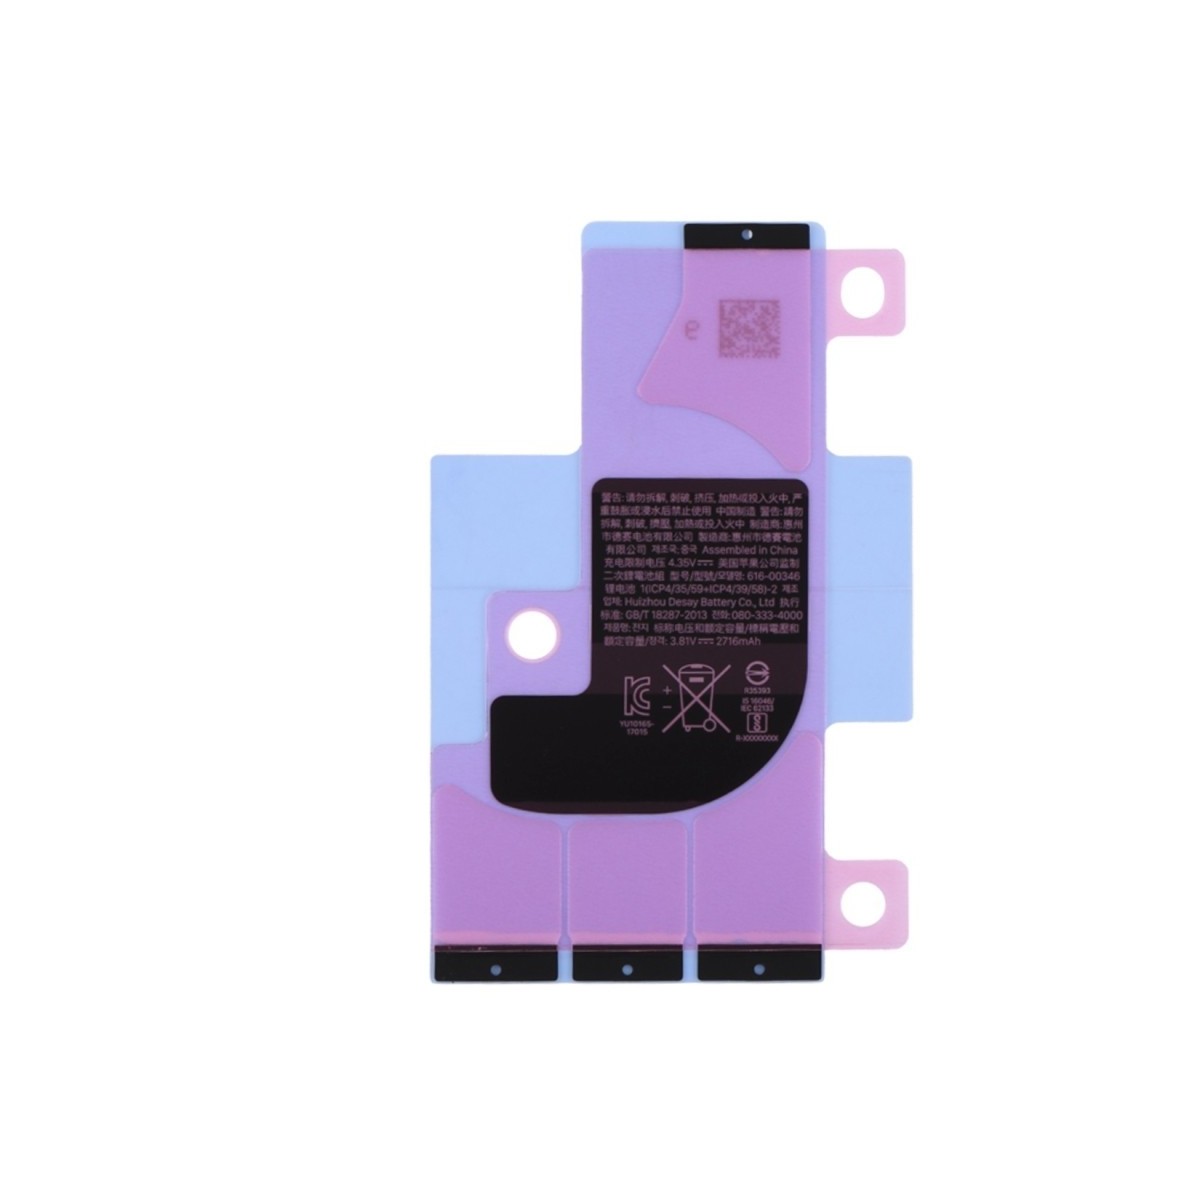 Autocollant Sticker adhésif colle batterie iPhone X